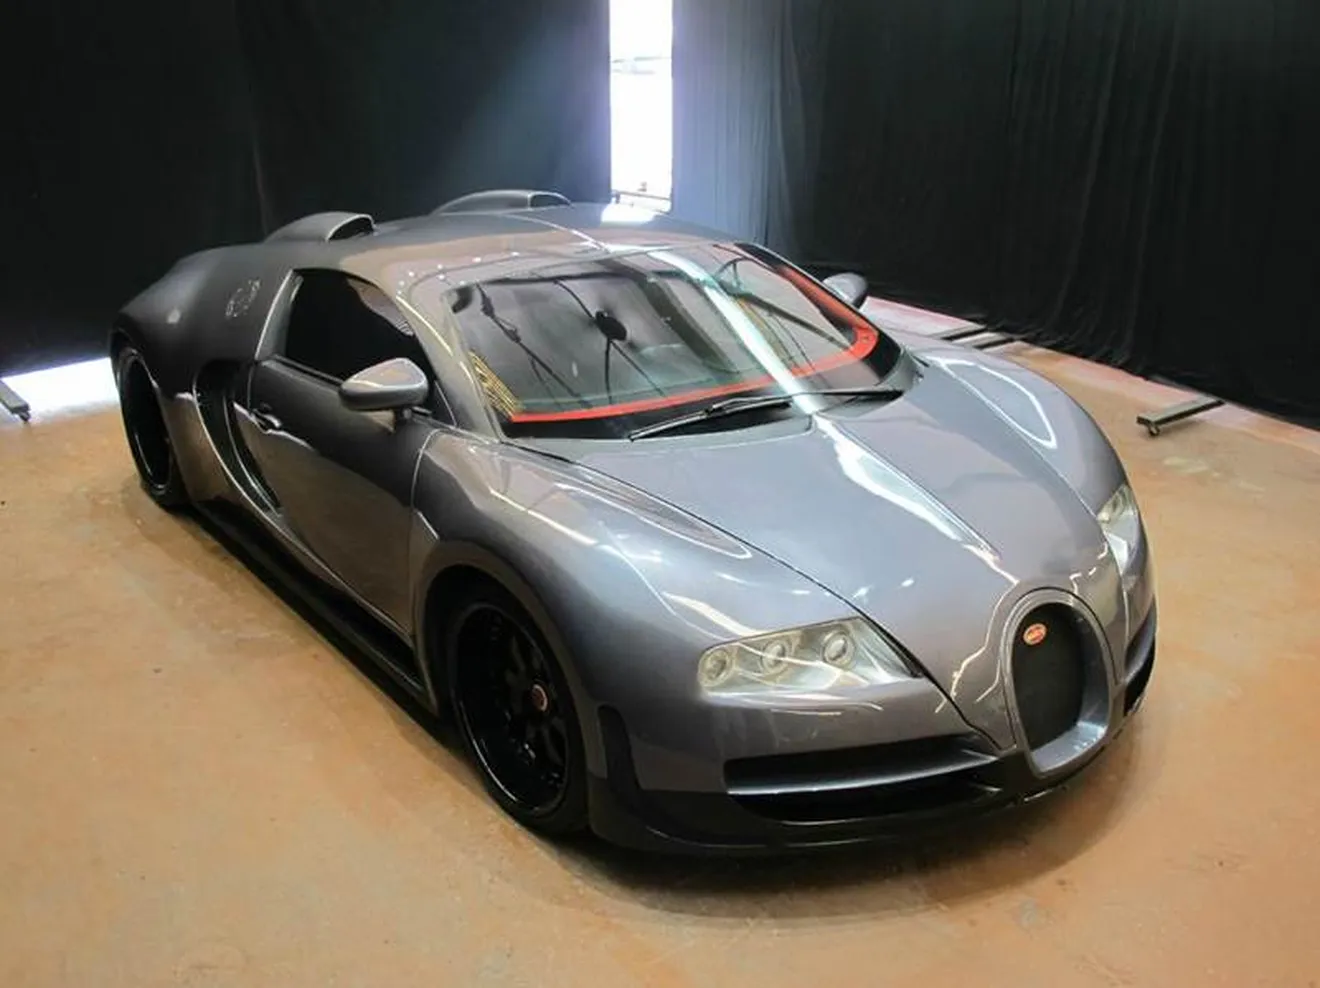 ¿Pagarías 75.000 euros por esta réplica del Bugatti Veyron?